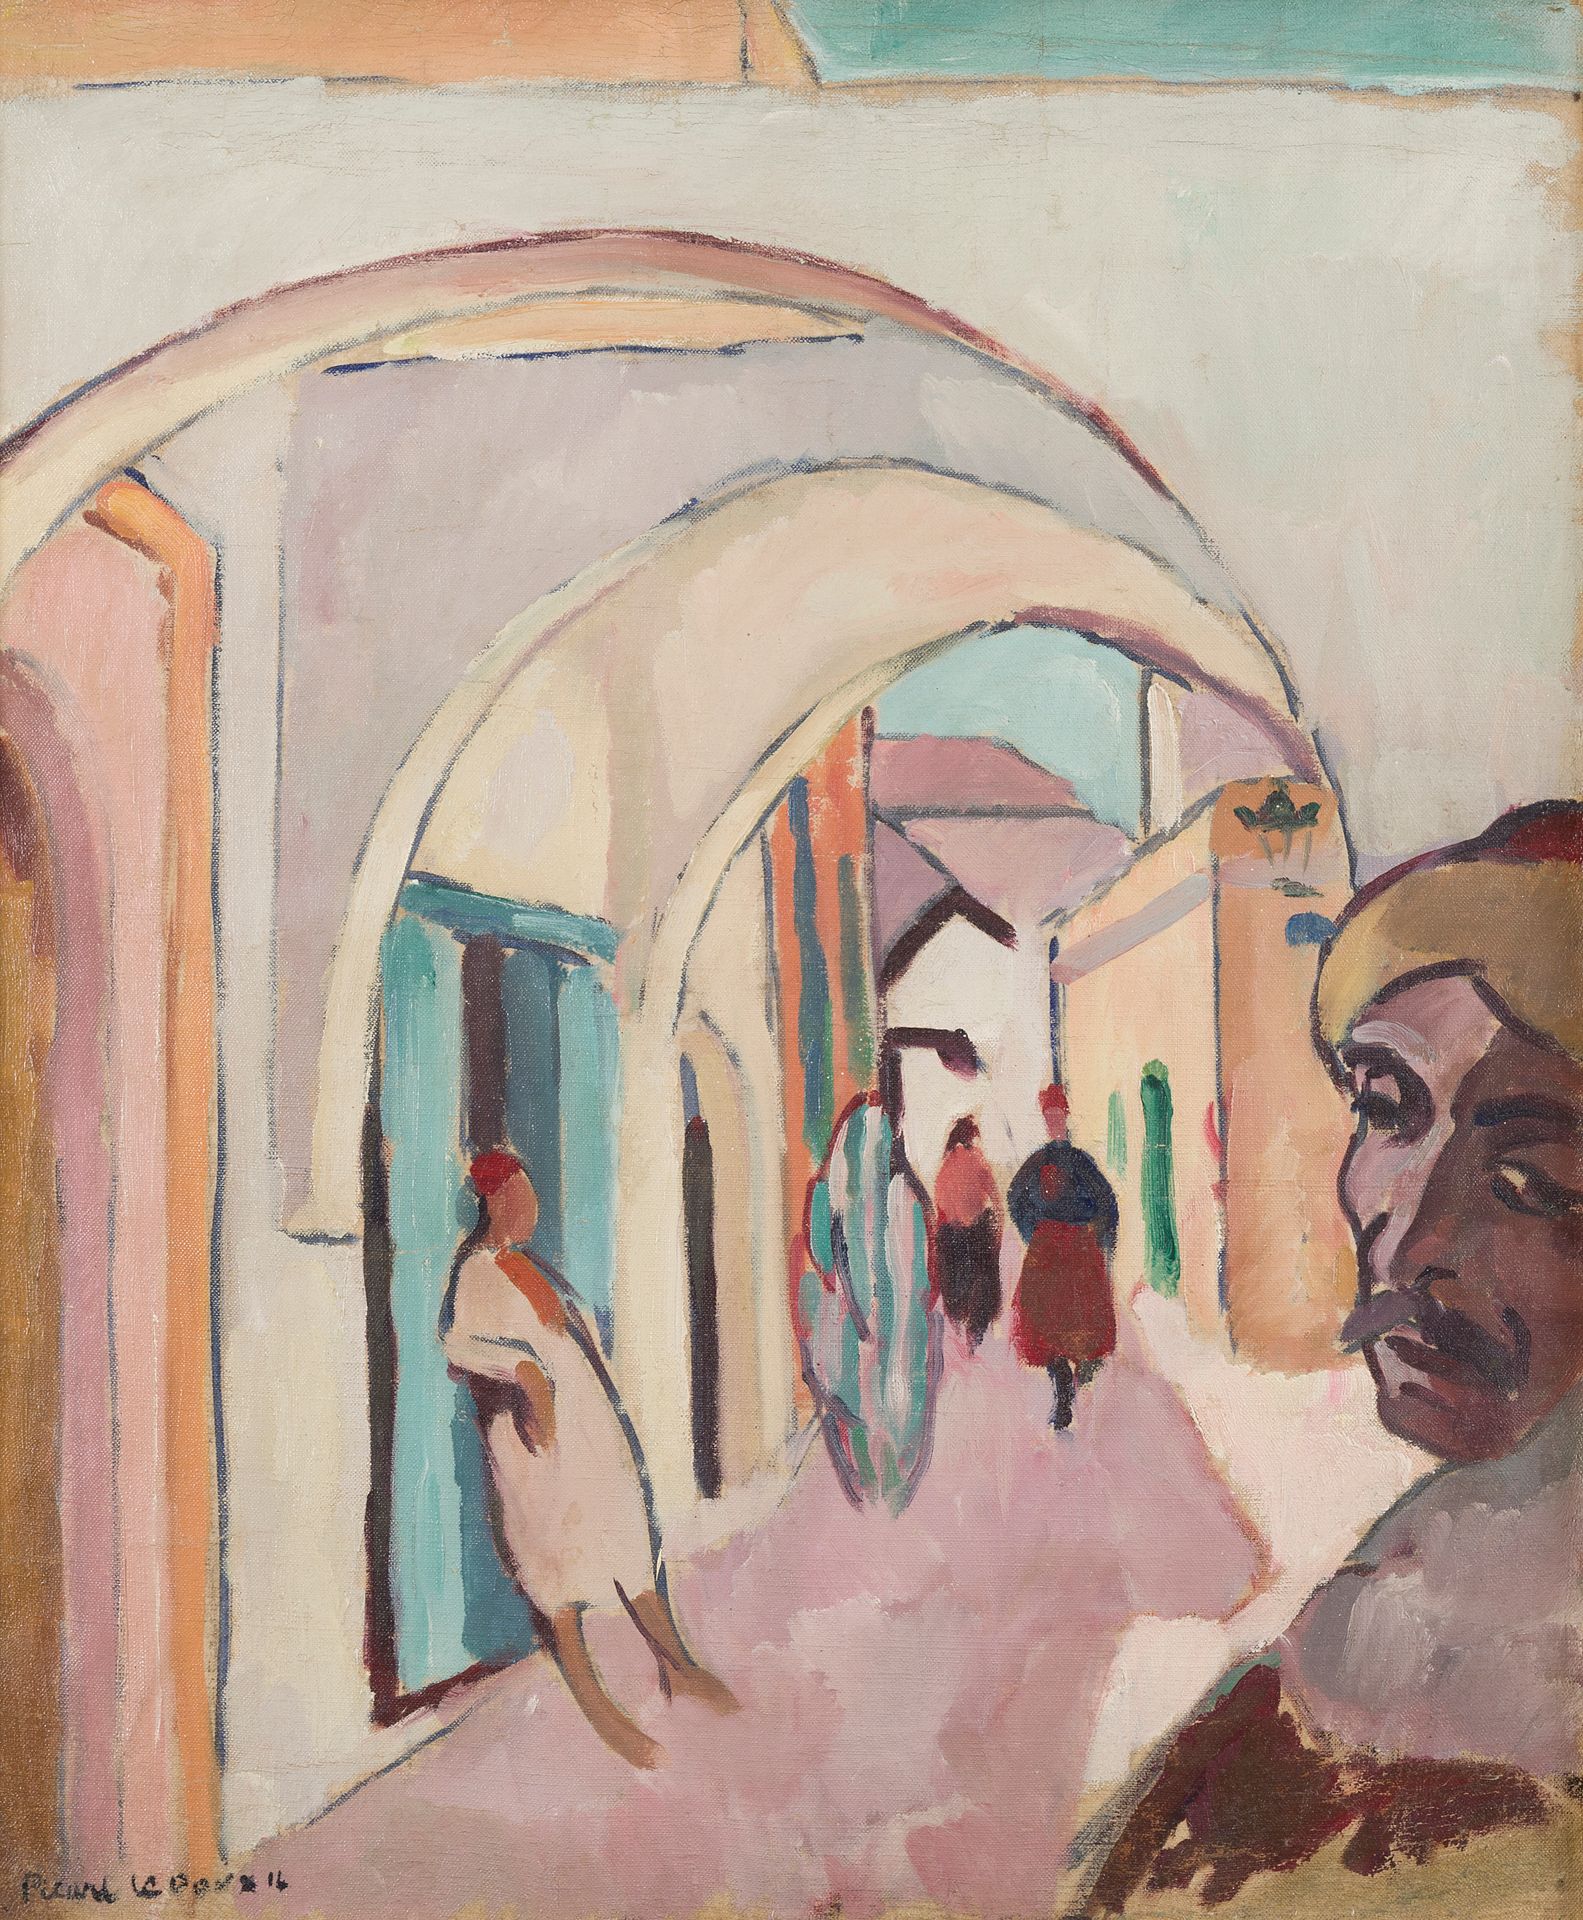 Null 夏尔-皮卡特-勒杜克斯 (1881-1959)
突尼斯，1914年
布面油画
左下方有签名，日期为14
54 x 45厘米